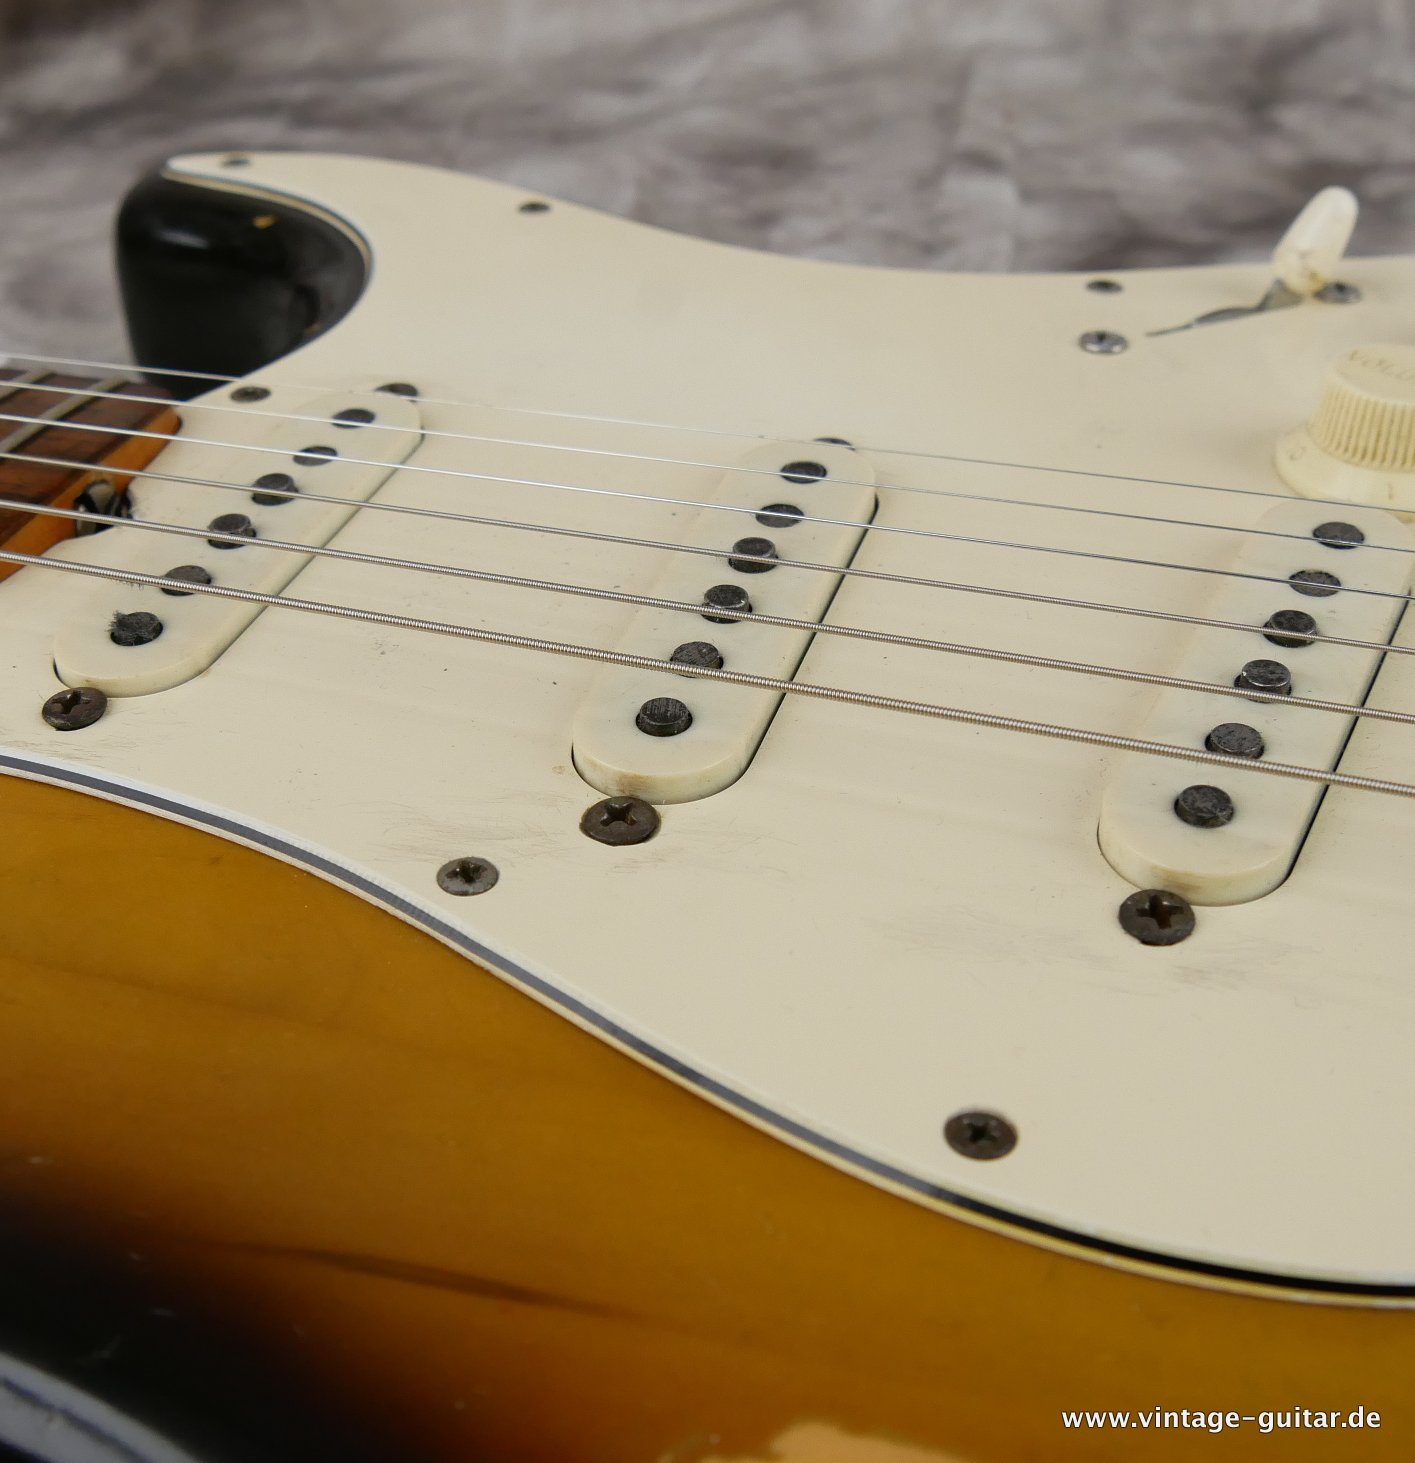 Fender-Stratocaster-1972-sunburst-4-hole-014.JPG